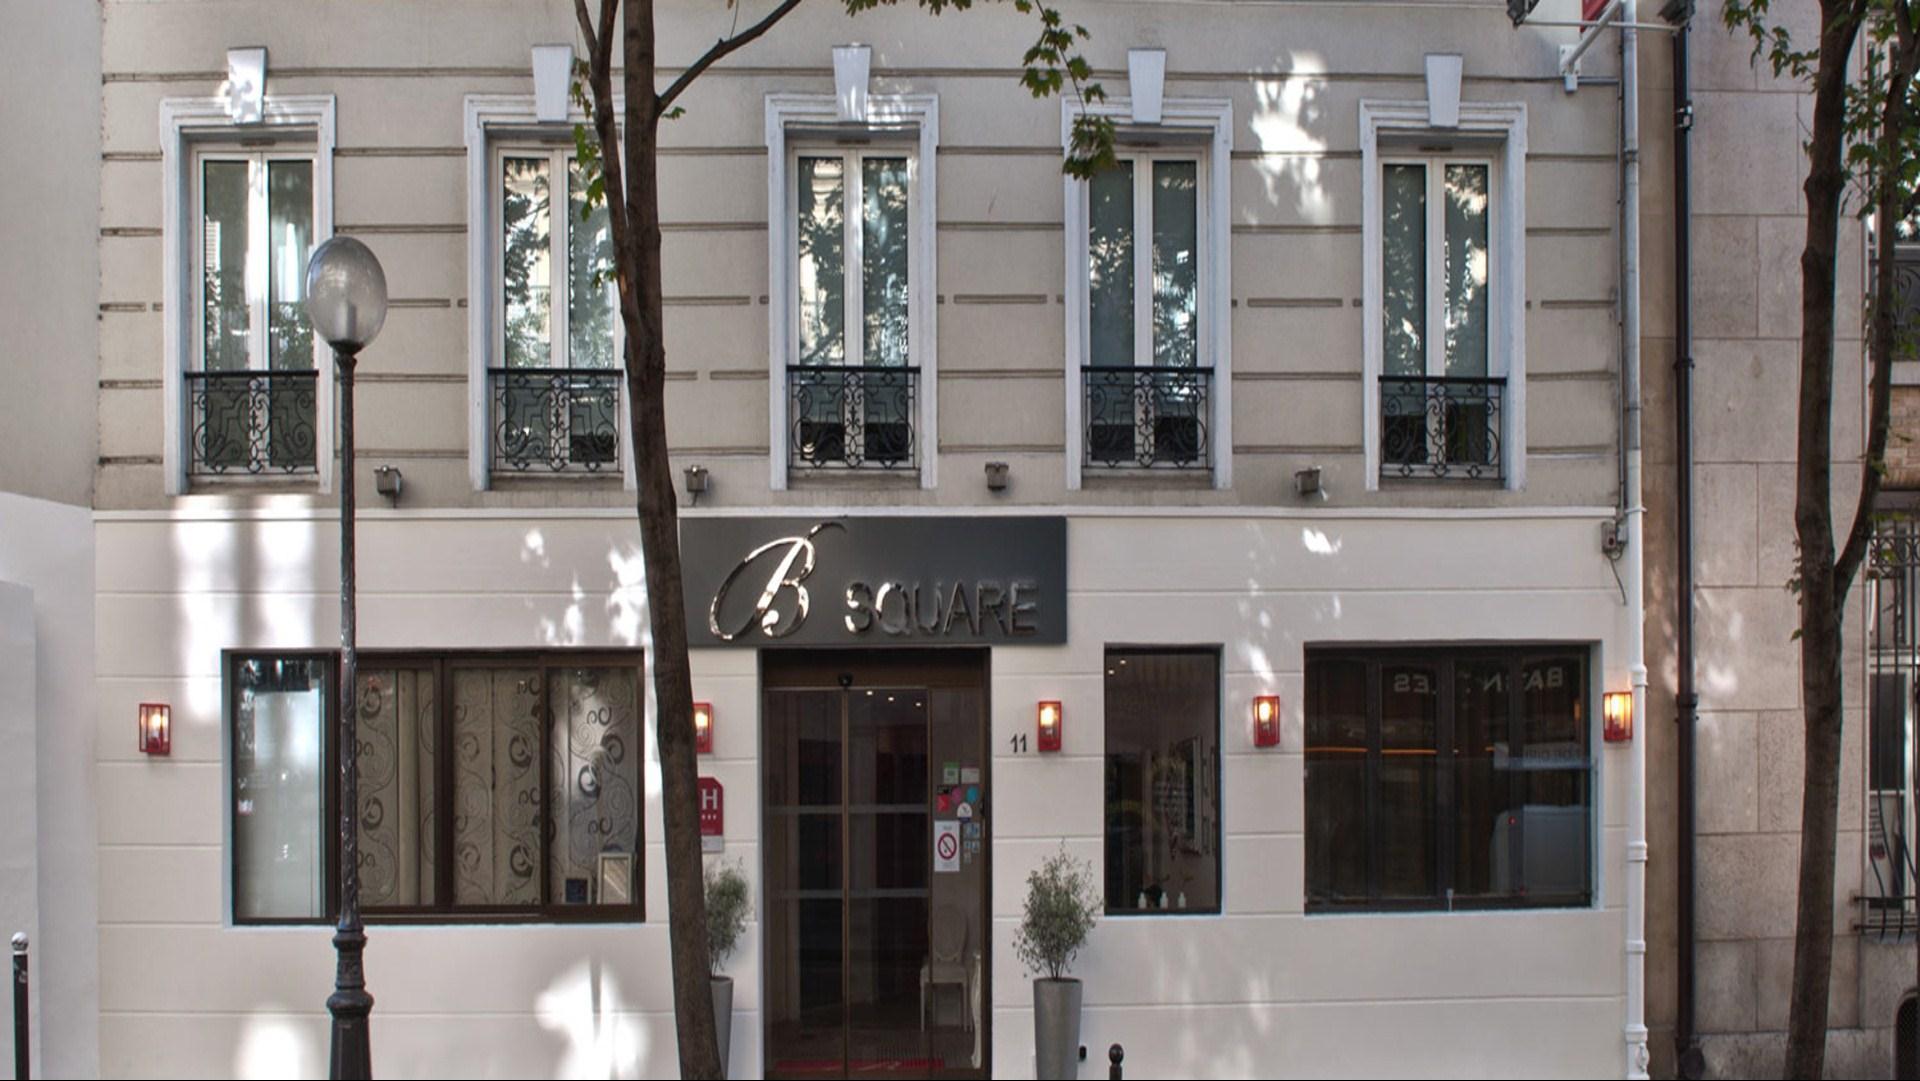 Hotel B Square in Paris, FR